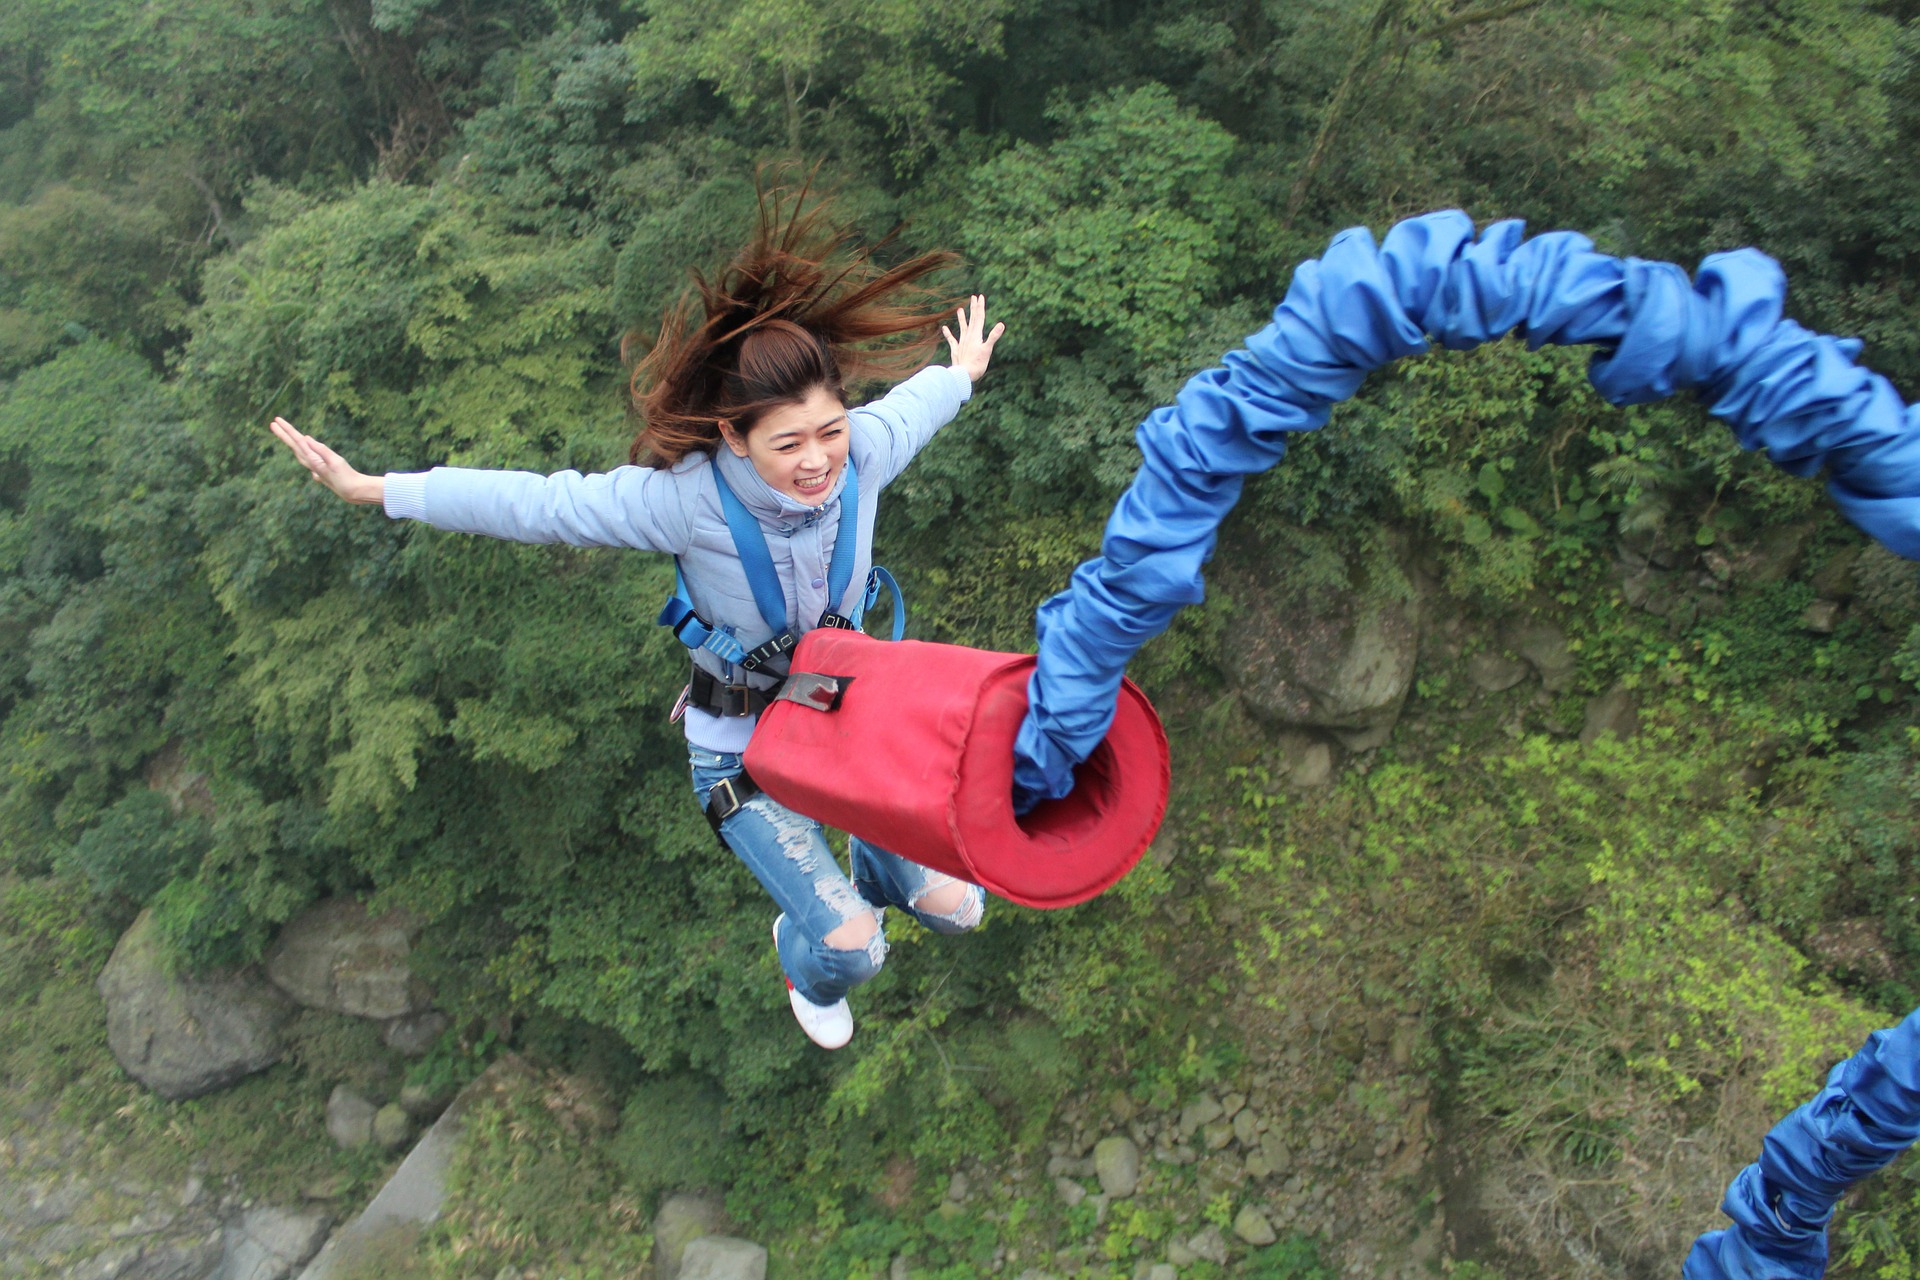 Měli byste odvahu skočit si bungee jumping? Nebo vám v tom brání silný pud sebezáchovy?